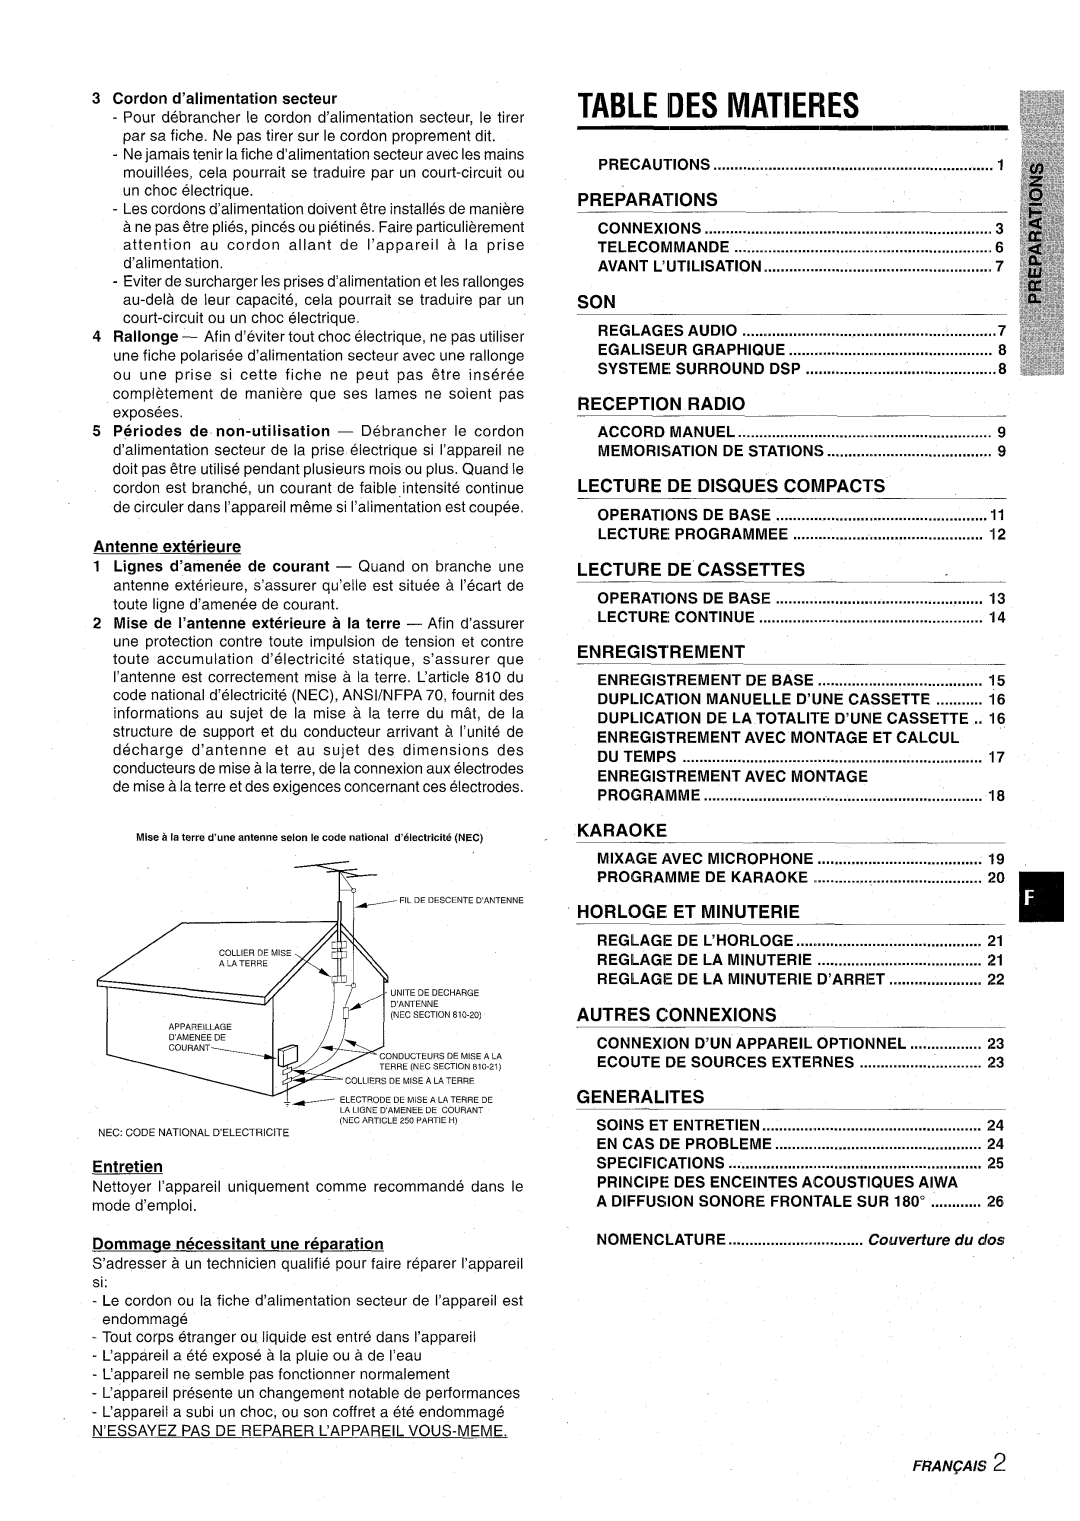 Aiwa CX-NA71 Idesmatieres, Antenne exterieure, Entretien, Connexions, Avant L’Ijtilisation, Egaliseijr Graphique, Radio 